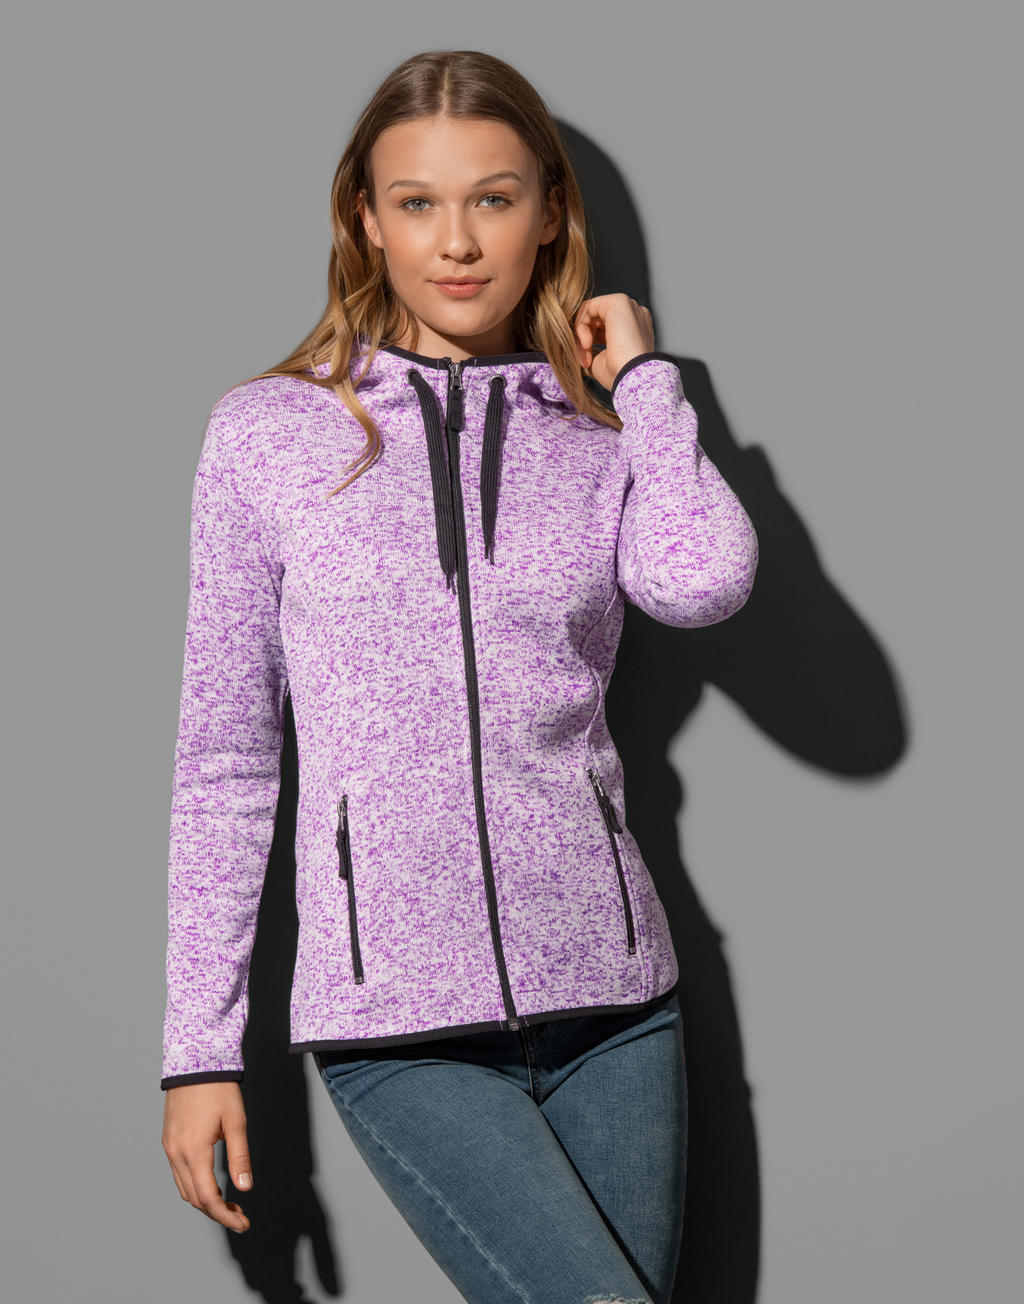  Knit Fleece Jacket Women in Farbe Light Grey Melange